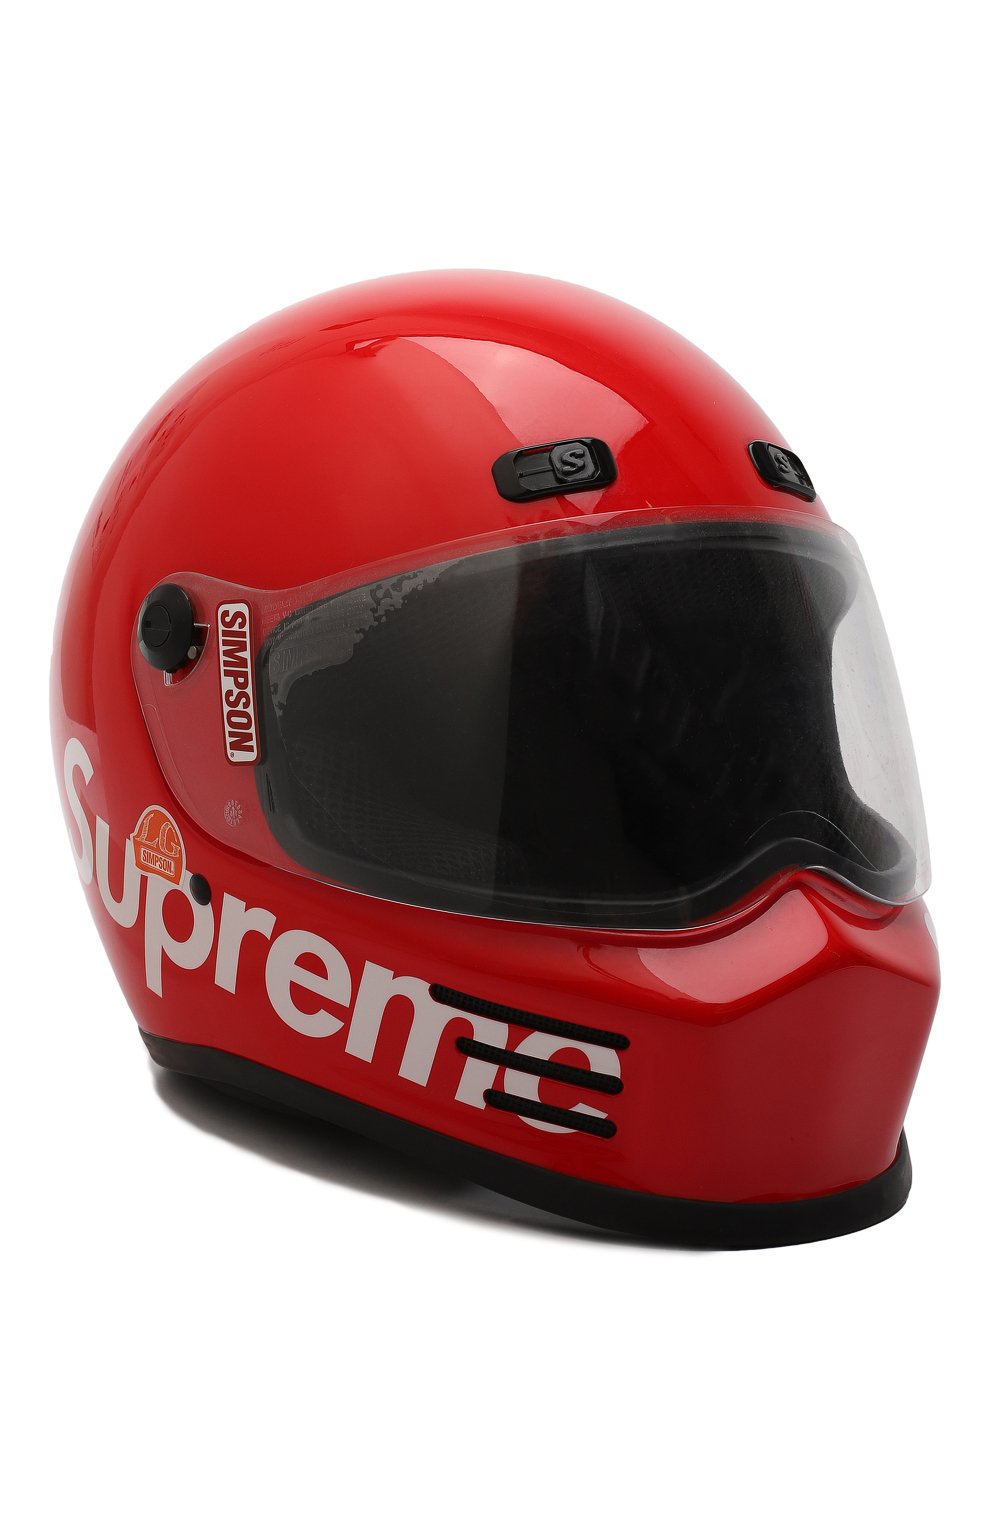 Шлем для картинга | Supreme | Красный - 1